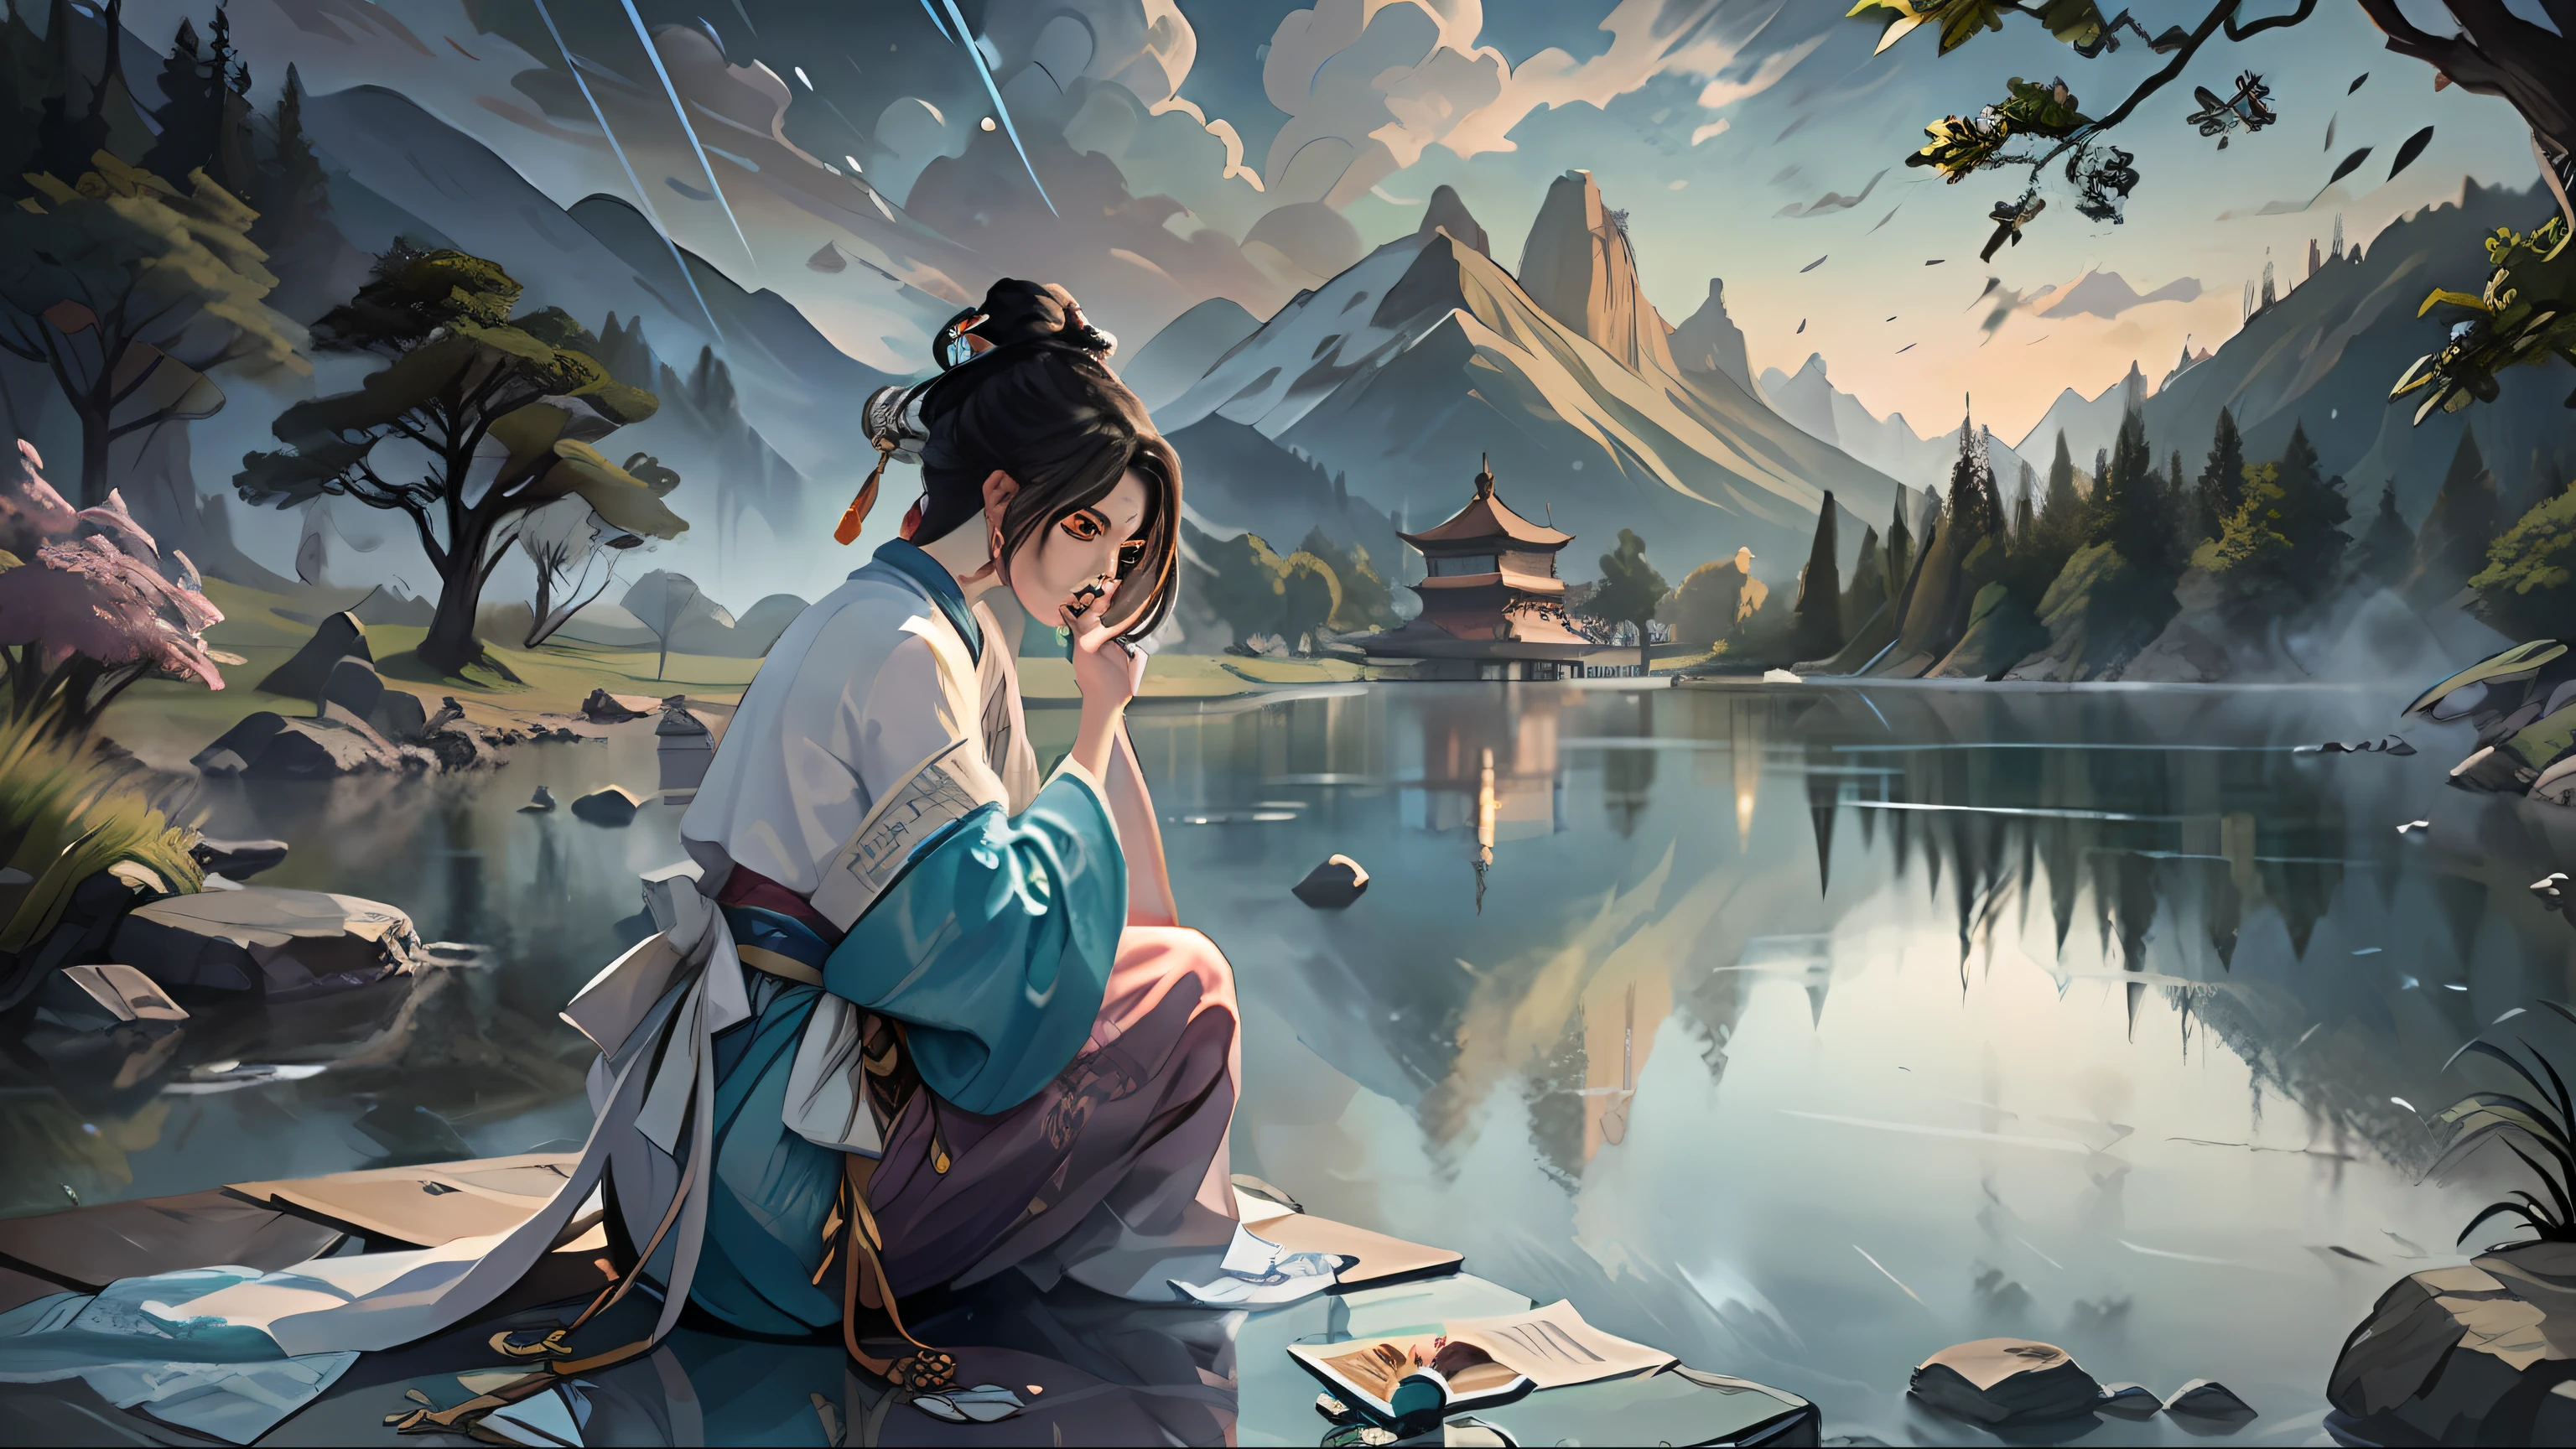 中国古代スタイル, 湖畔のパビリオンで, 伝統的な中国の伝統的な白い漢服を着た女性, 女性はパビリオンの椅子に座っています, 女性は湖を見ます, 背景の山面に高い塔が立っています, 湖にはたくさんの蓮の花があります, 湖の上に湖を渡る橋があります, 空は霧雨です, 雨がはっきりと見える, 女性を横から観察する, 女性はトランス状態になります,